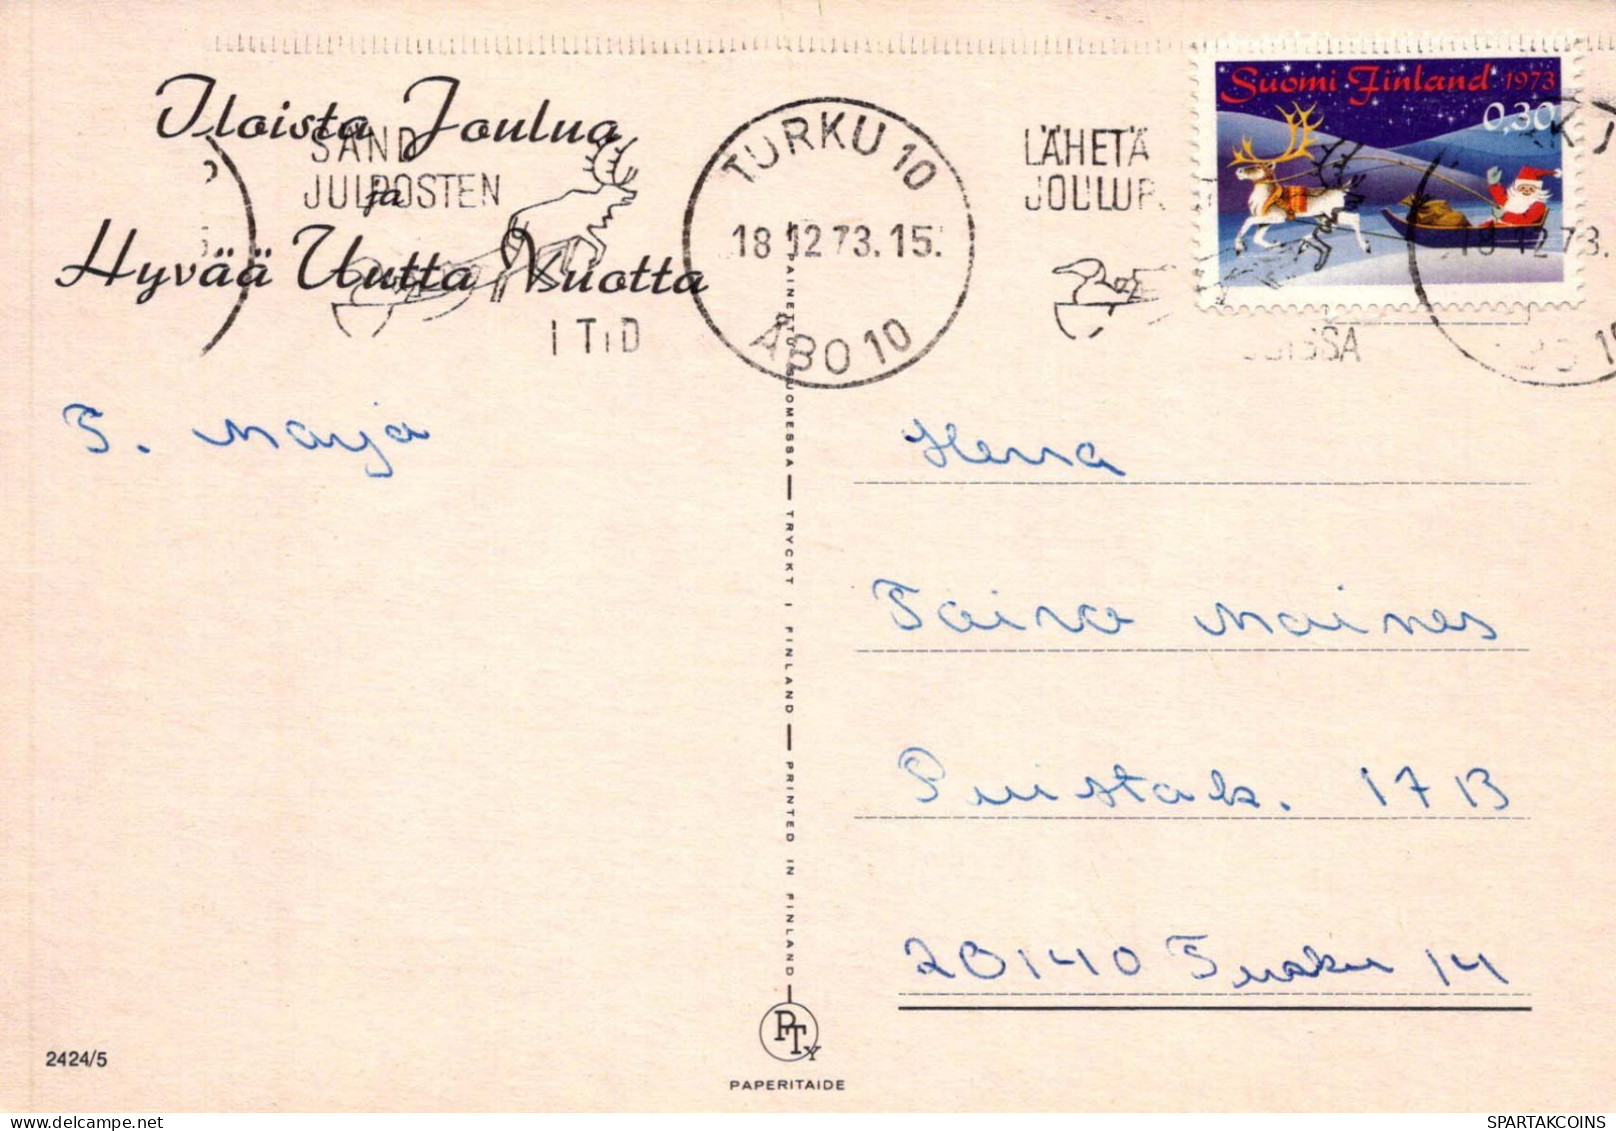 PÈRE NOËL Bonne Année Noël GNOME Vintage Carte Postale CPSM #PBM052.A - Santa Claus